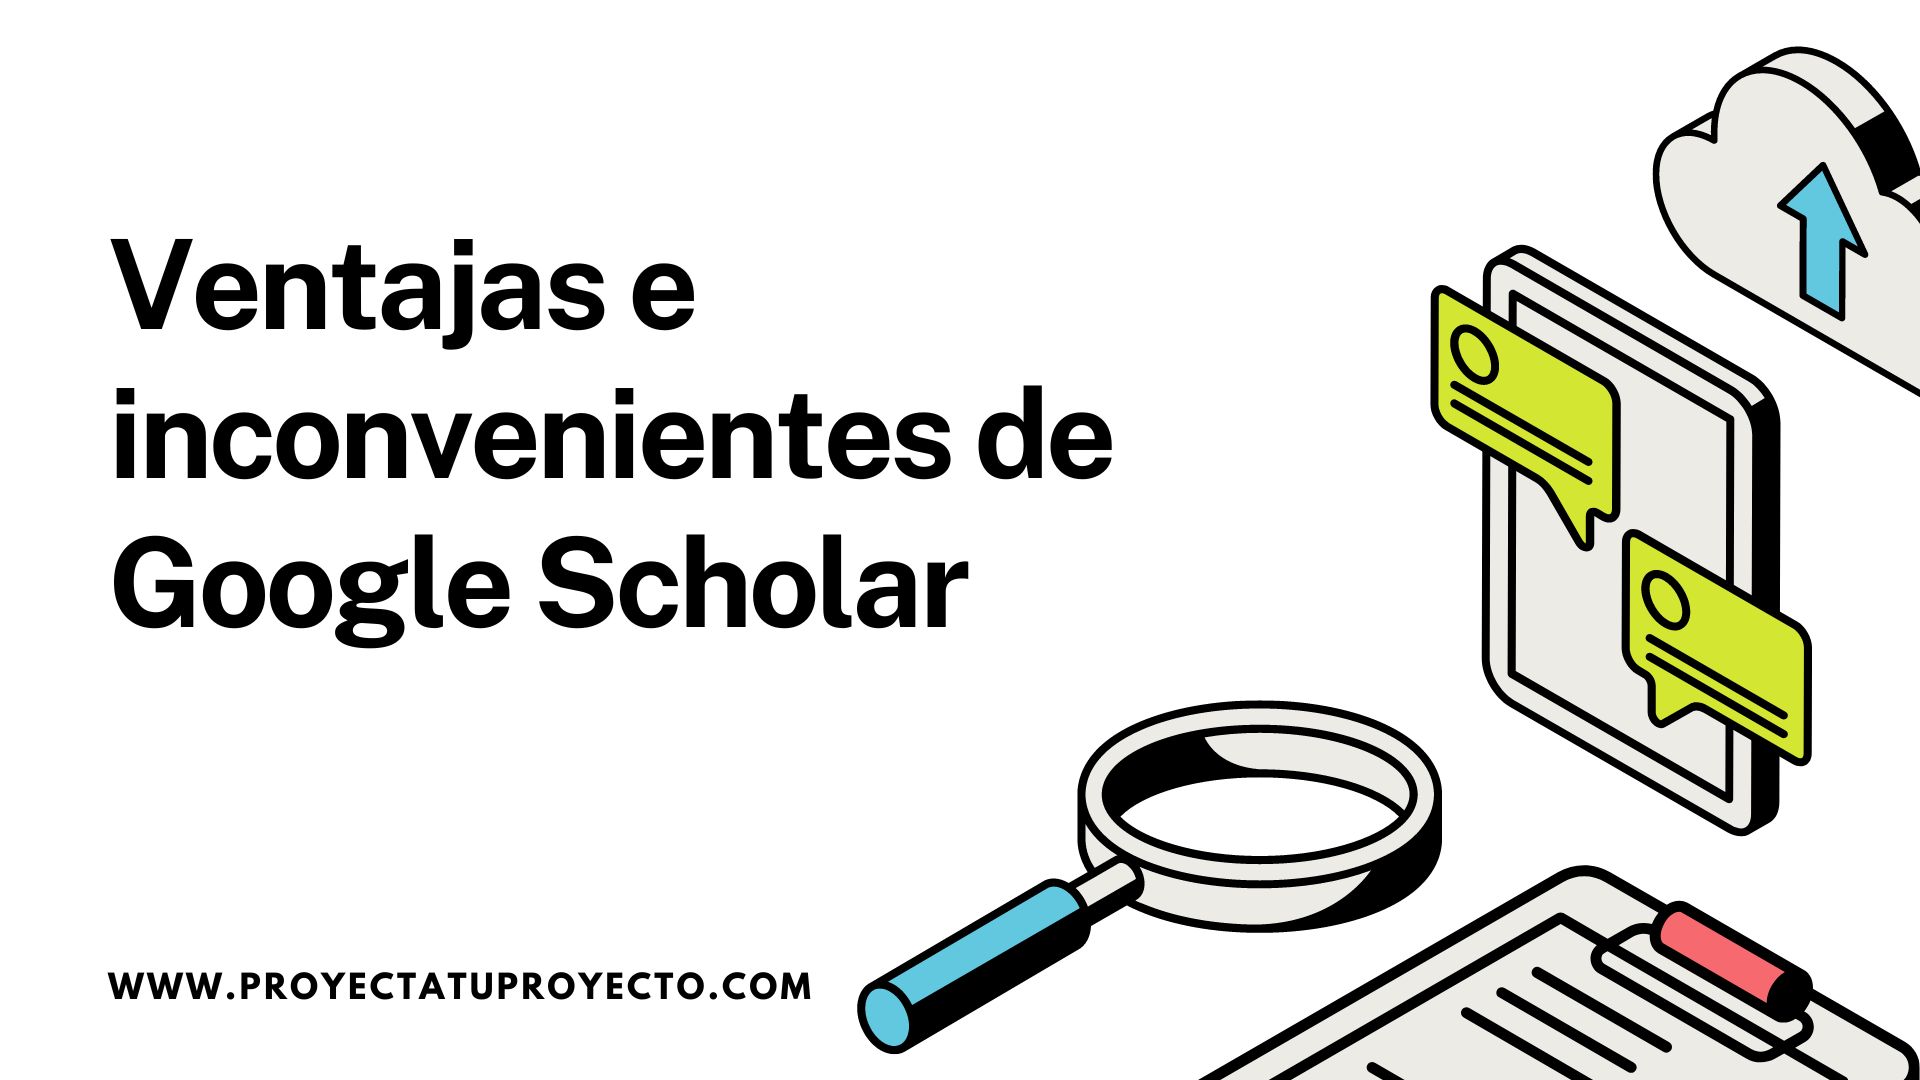 Explorando el Uso de Google Scholar para Investigaciones de TFG y TFM. ¿Qué es Google Scholar y cómo utilizarlo en la redacción de trabajos académicos?